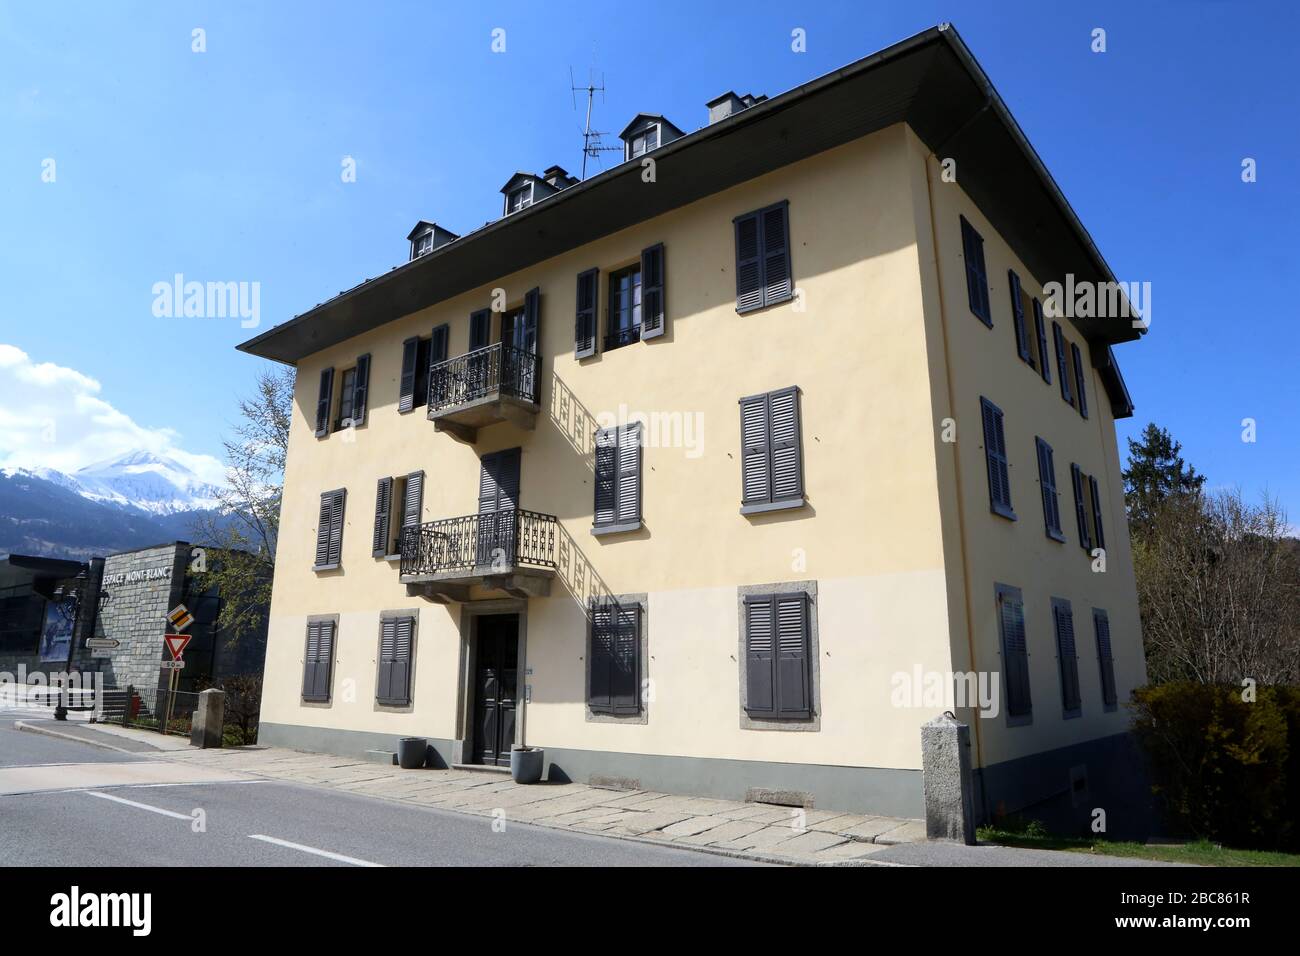 Façade d'un immeuble dans le centre-ville. Saint-Gervais-les-Bains. Haute-Savoie. France. Stock Photo